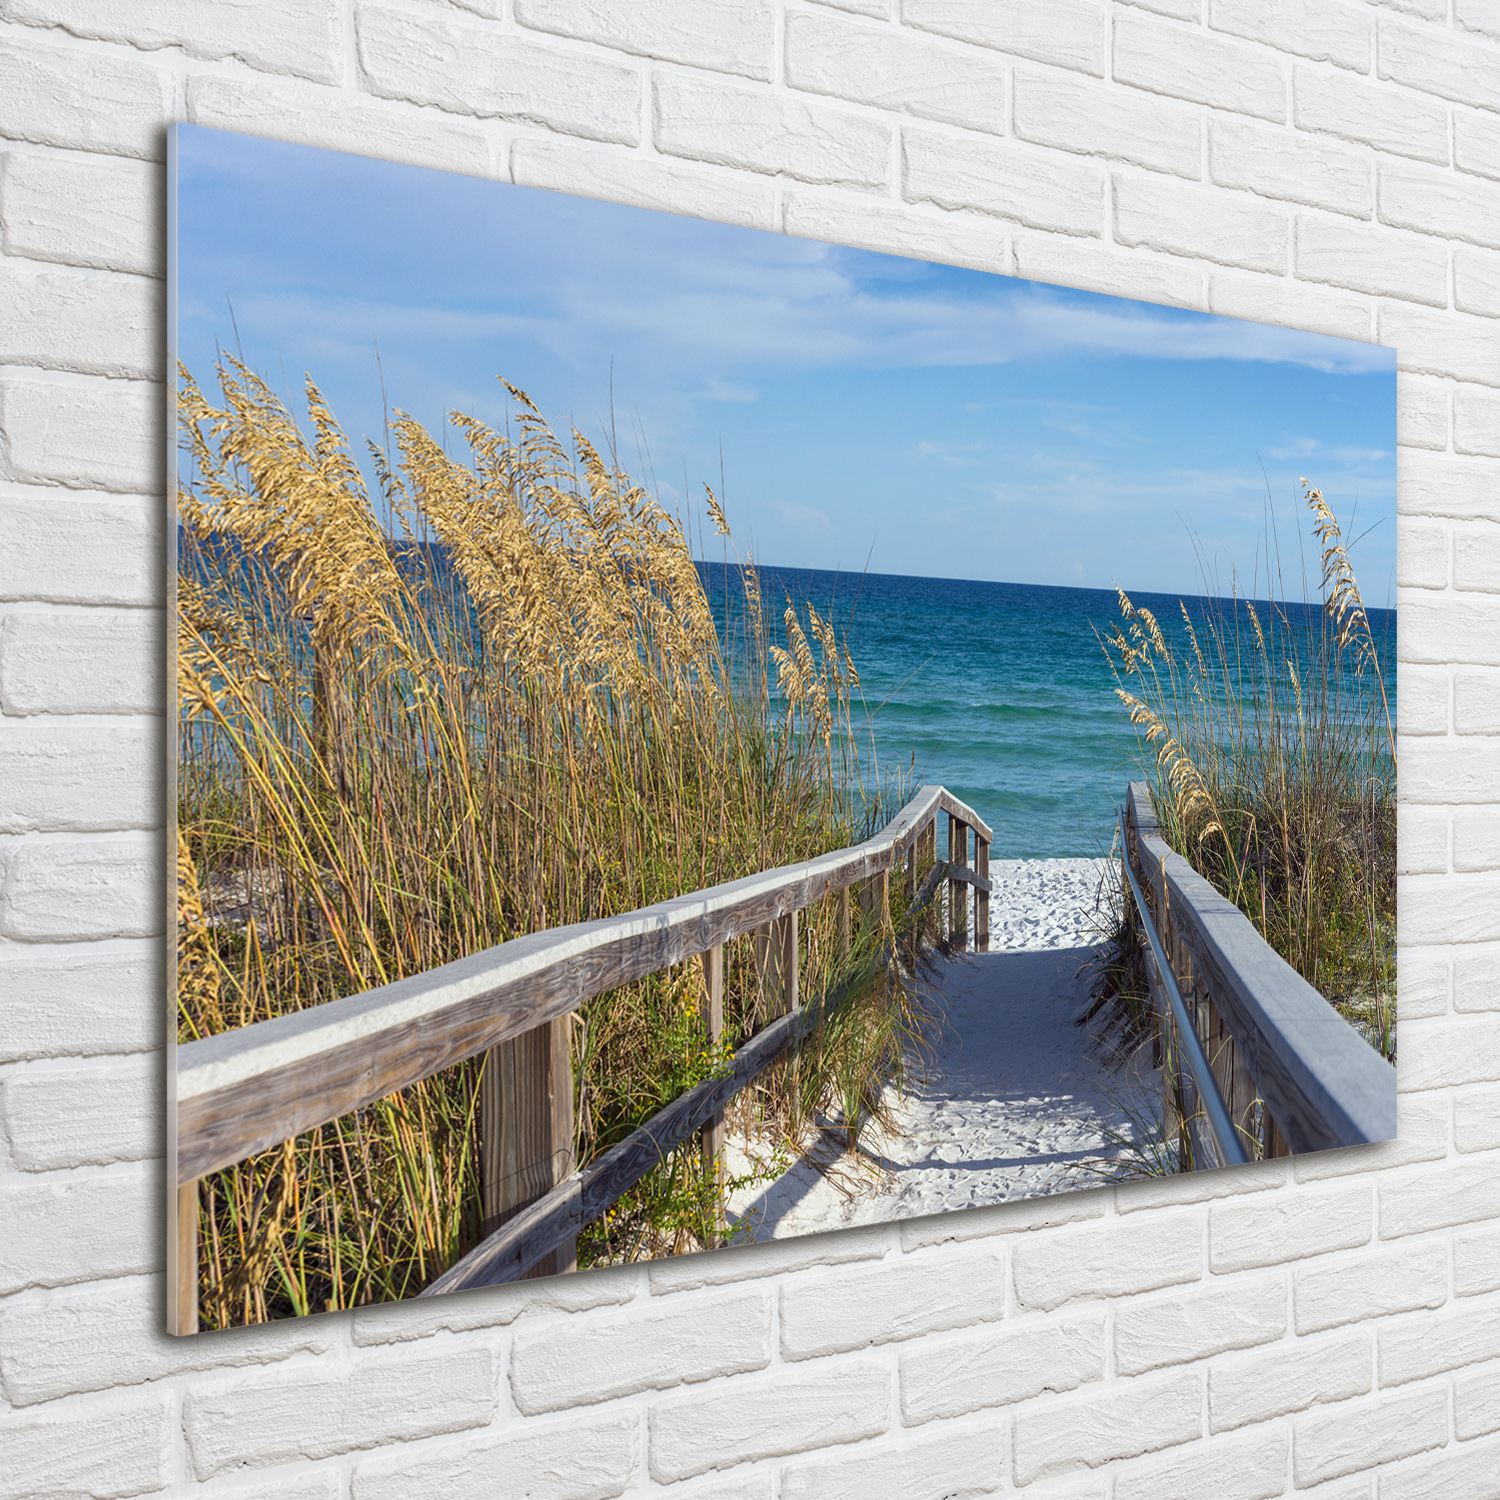 Glas-Bild Wandbilder Druck auf Glas 100x70 Deko Landschaften Küsten-Dünen